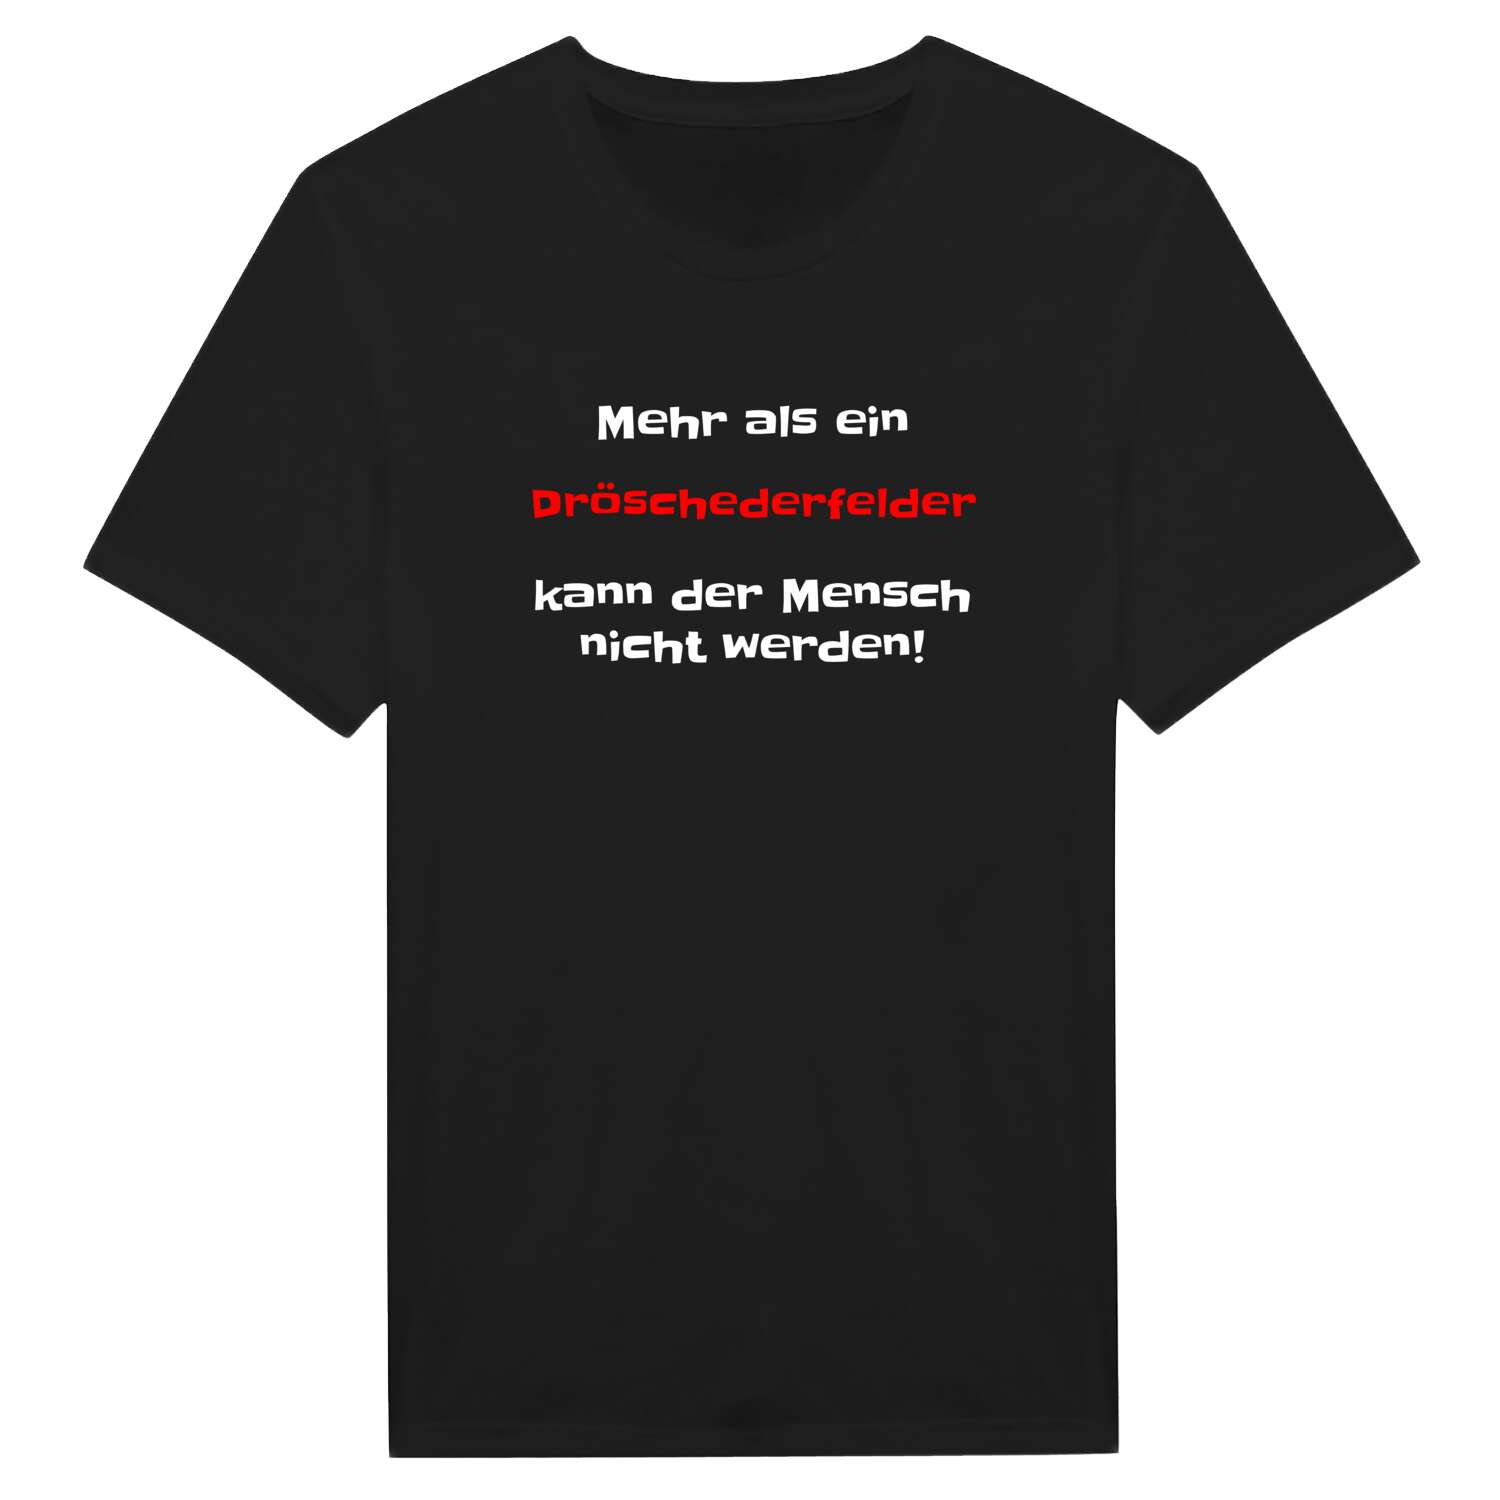 Dröschederfeld T-Shirt »Mehr als ein«